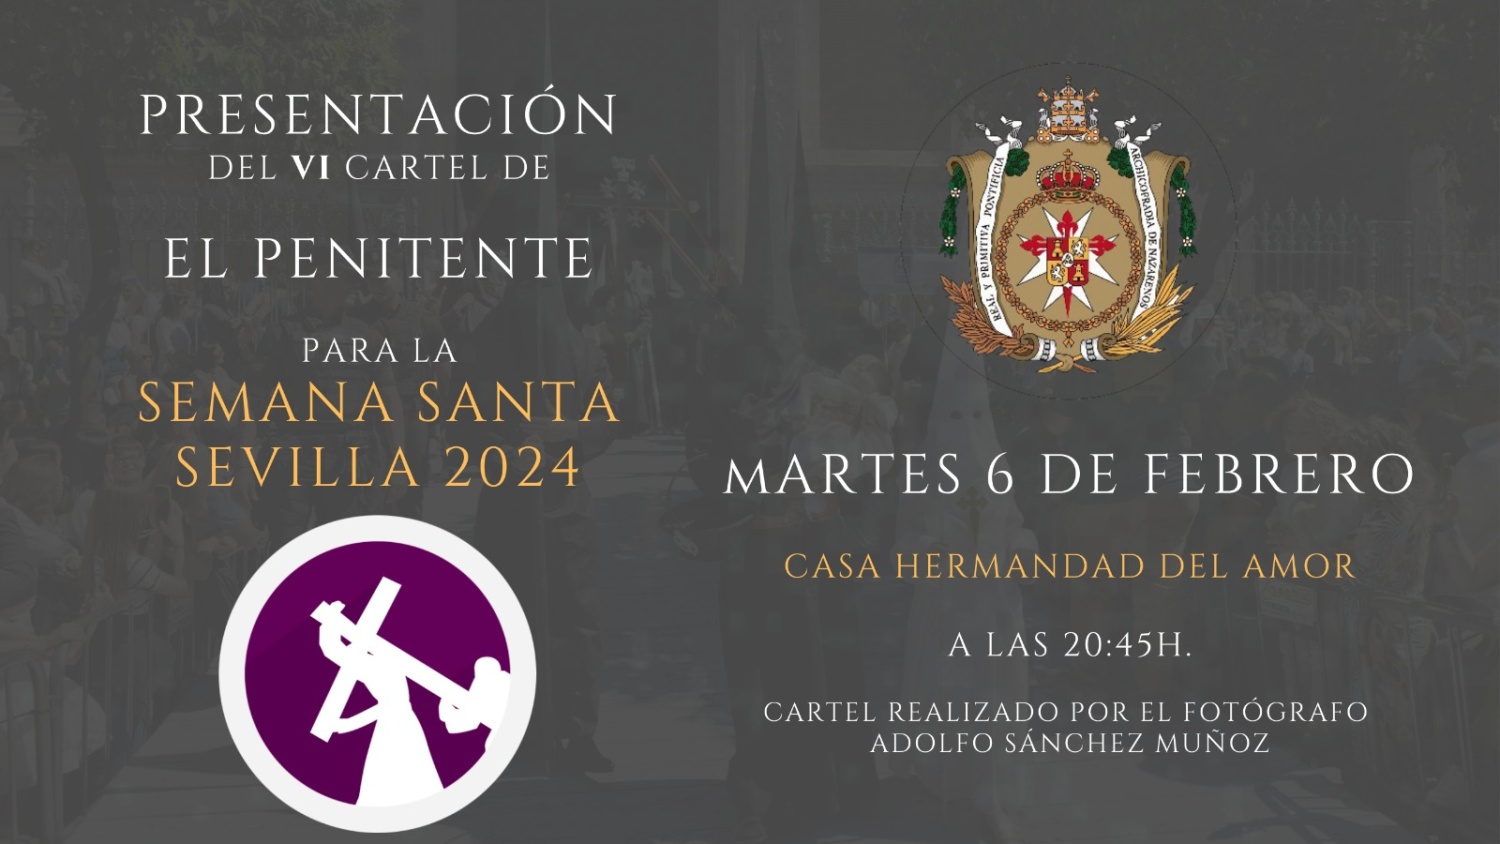 La Asociación Aplicación Cofrade El Penitente presentará su VI cartel de la Semana Santa de Sevilla en la Hermandad del Amor